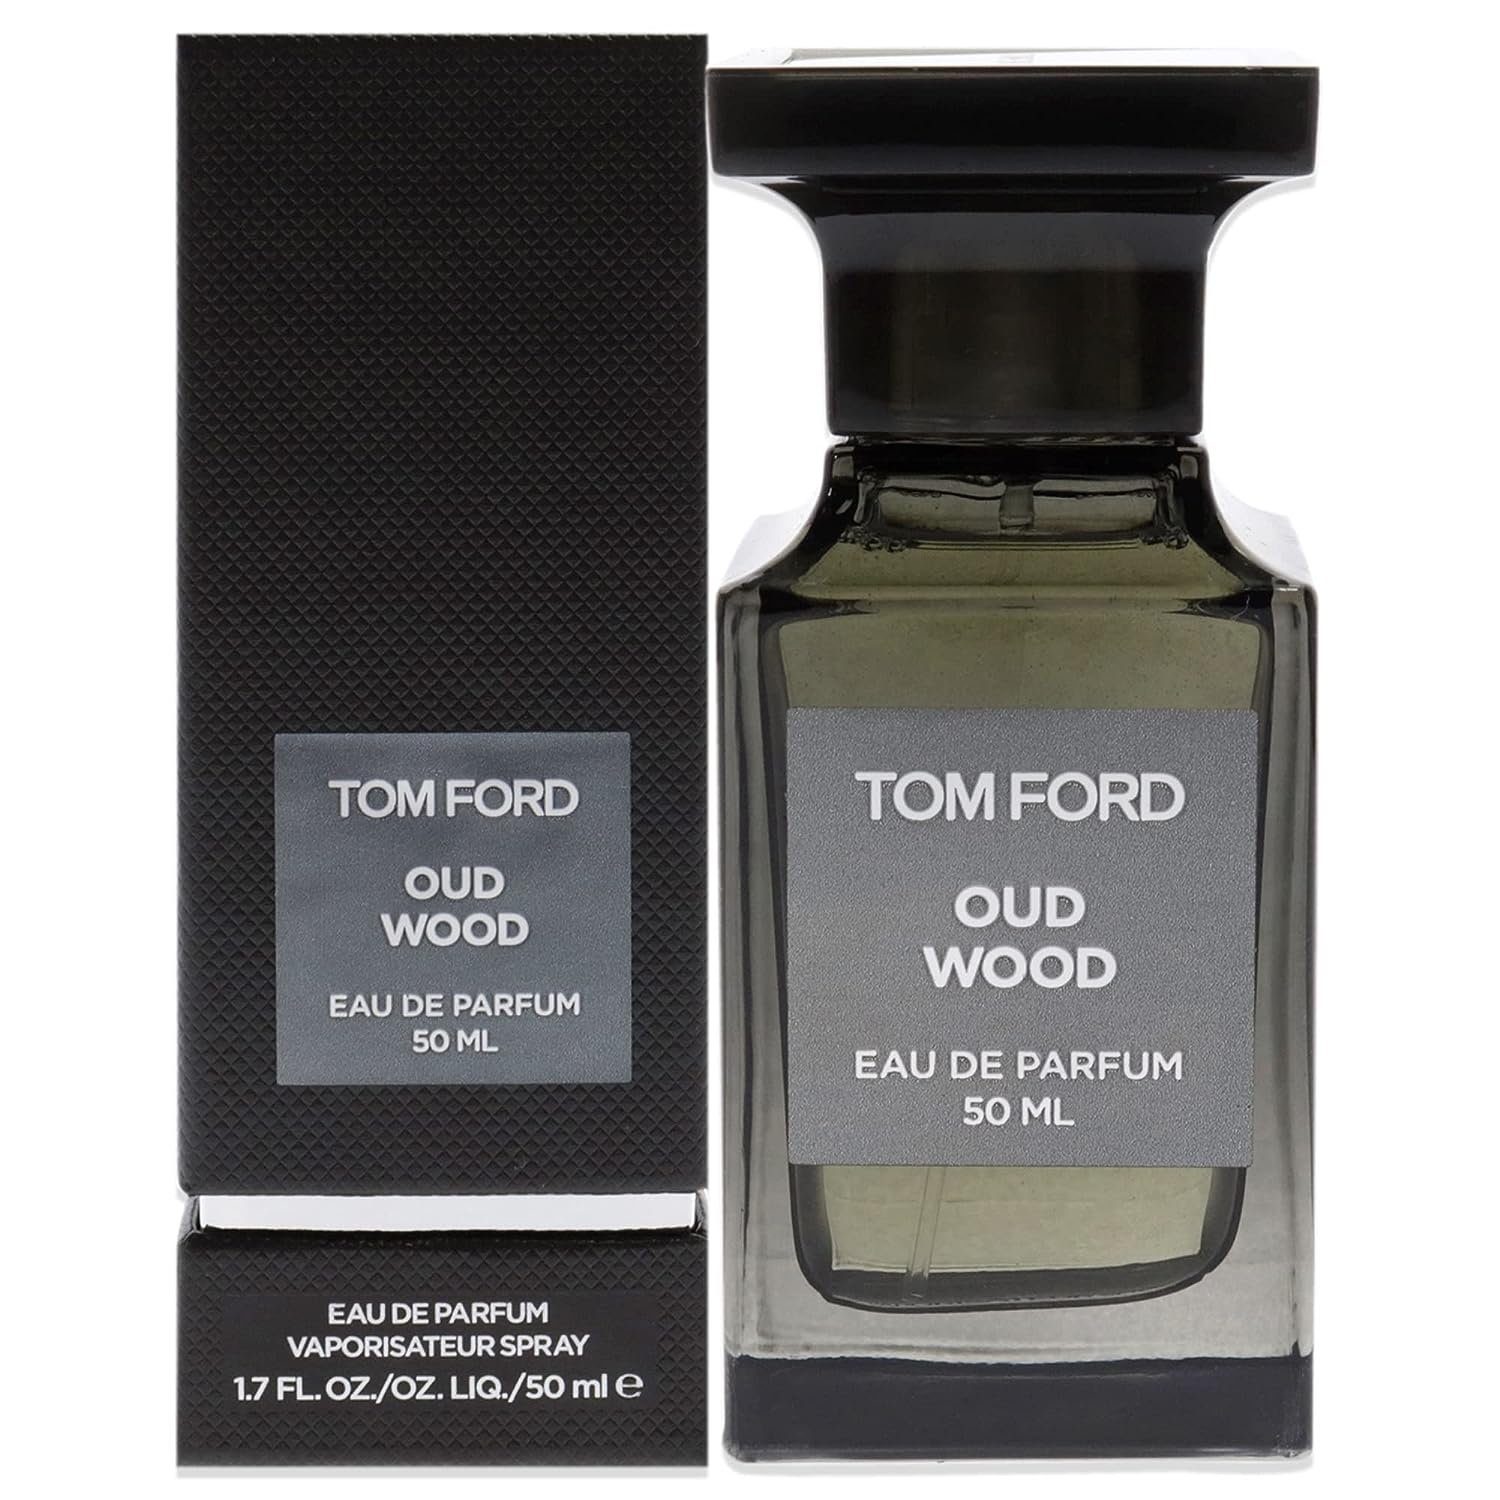 Tom Ford Eau de Parfum Oud Parfum de 50ml Eau Wood